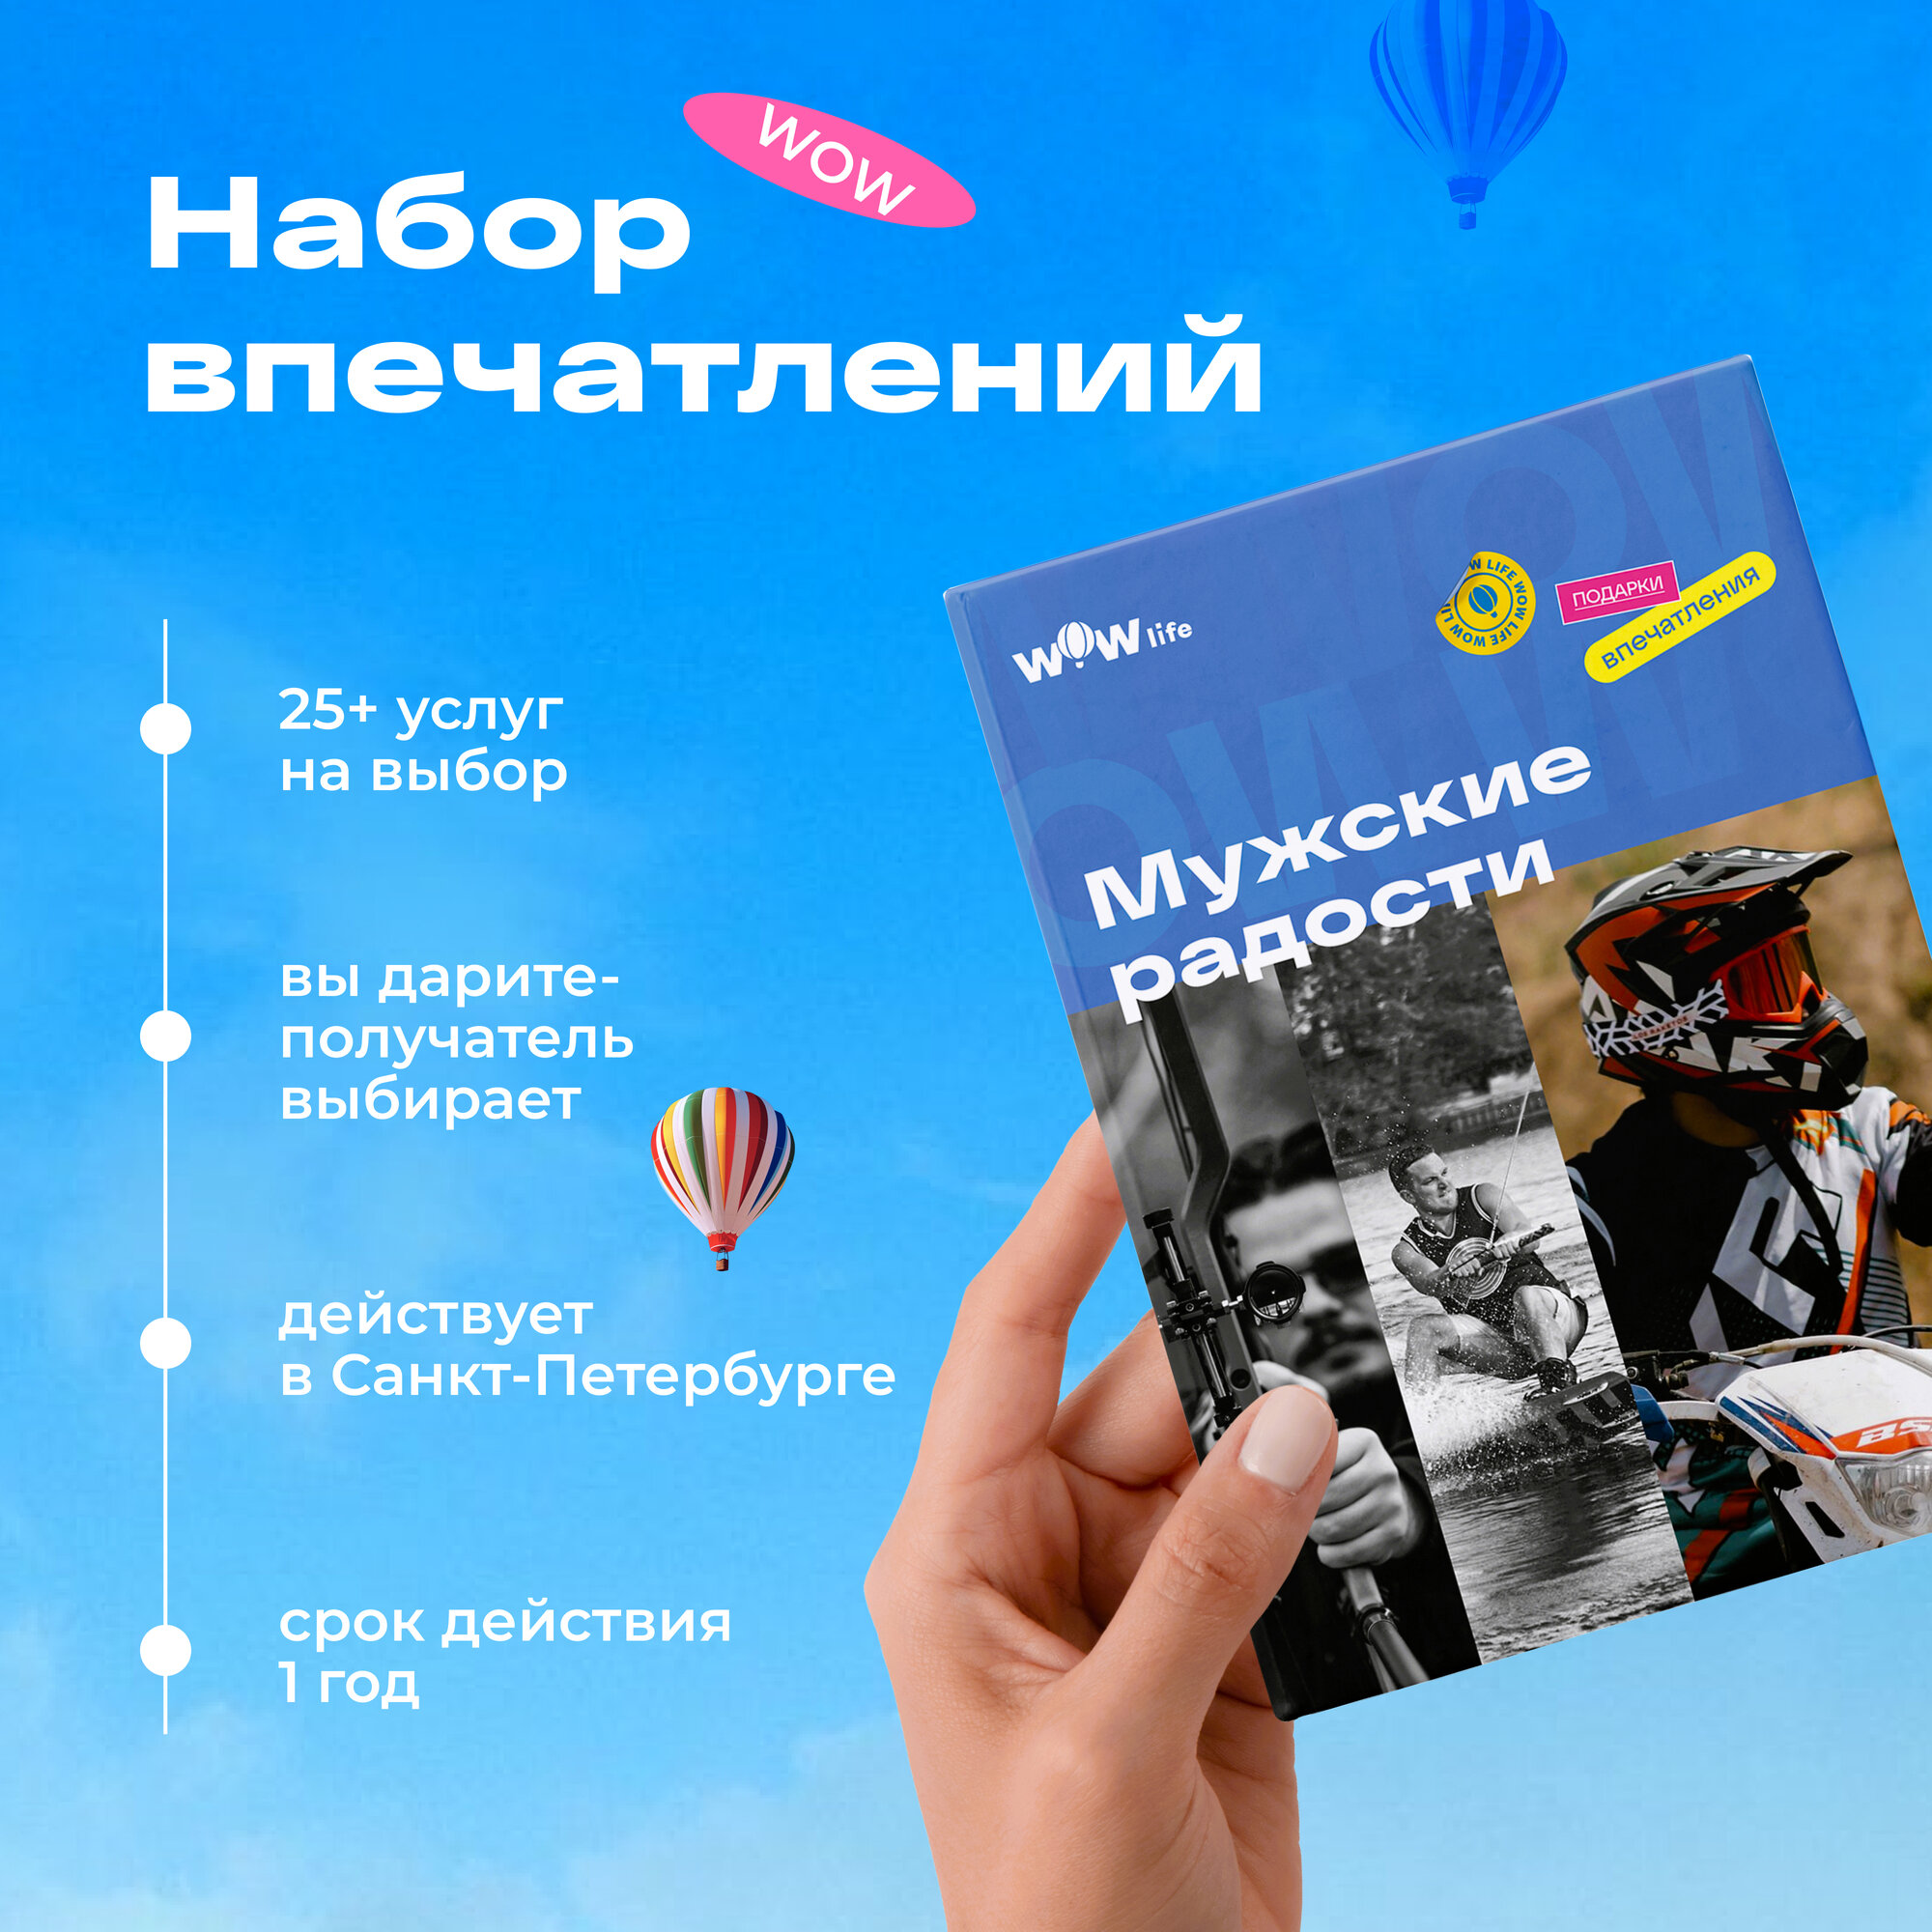 Подарочный сертификат WOWlife "Мужские радости" - набор из впечатлений на выбор, Санкт-Петербург